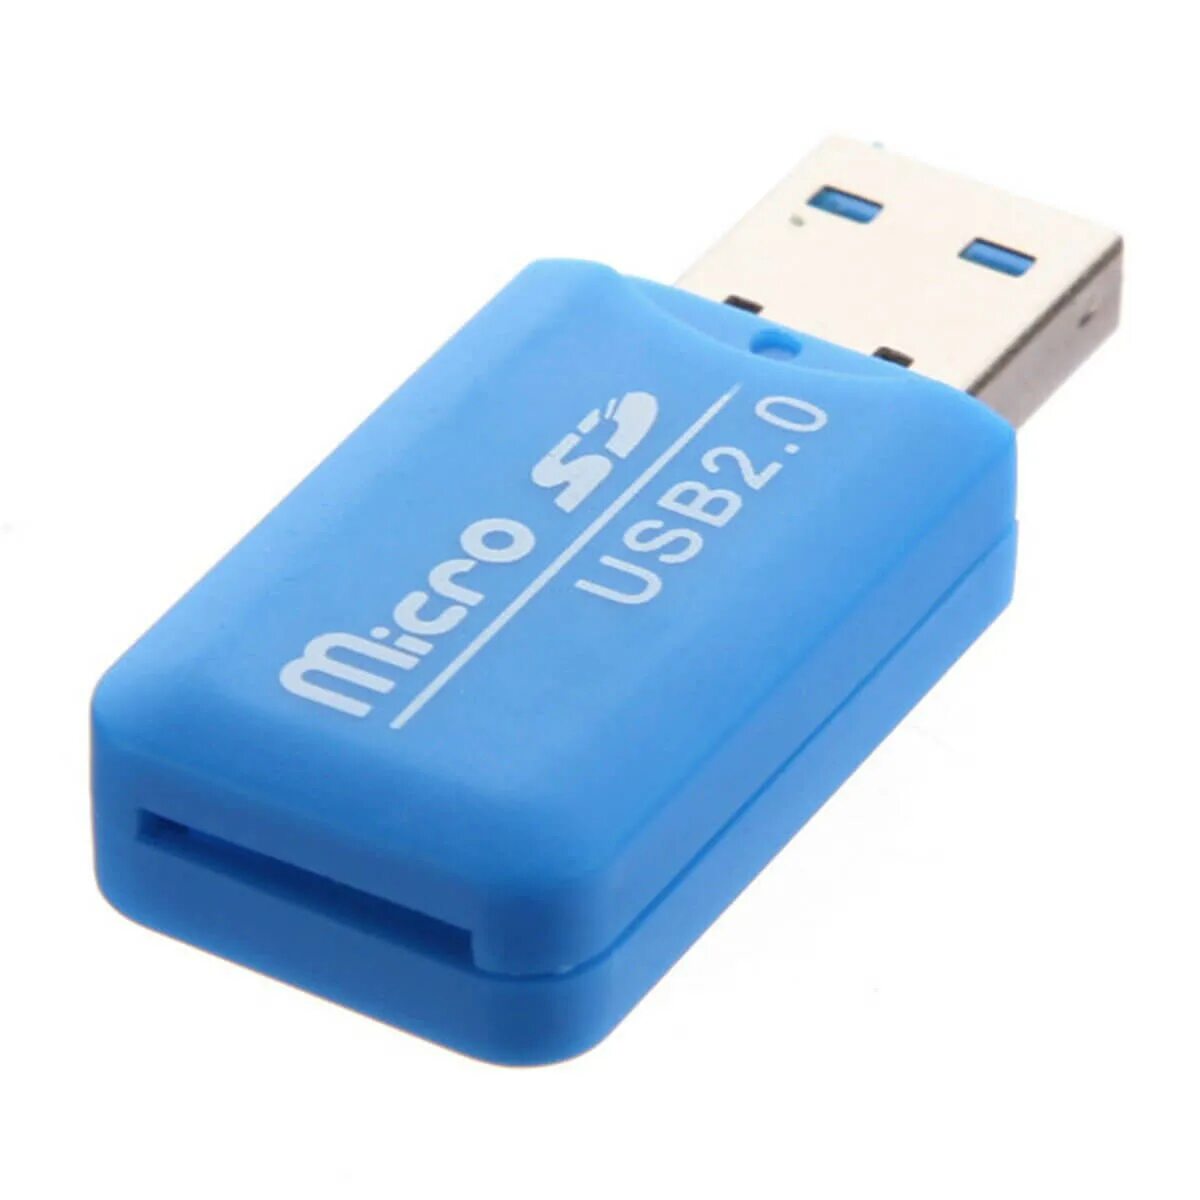 Купить картридер микро usb. Адаптер USB 3.0 микро SD. Card Reader 2 SD 2 MICROSD. Адаптер микро SD карта TF кард-ридер USB. Картридер для микро SD USB 2.0.